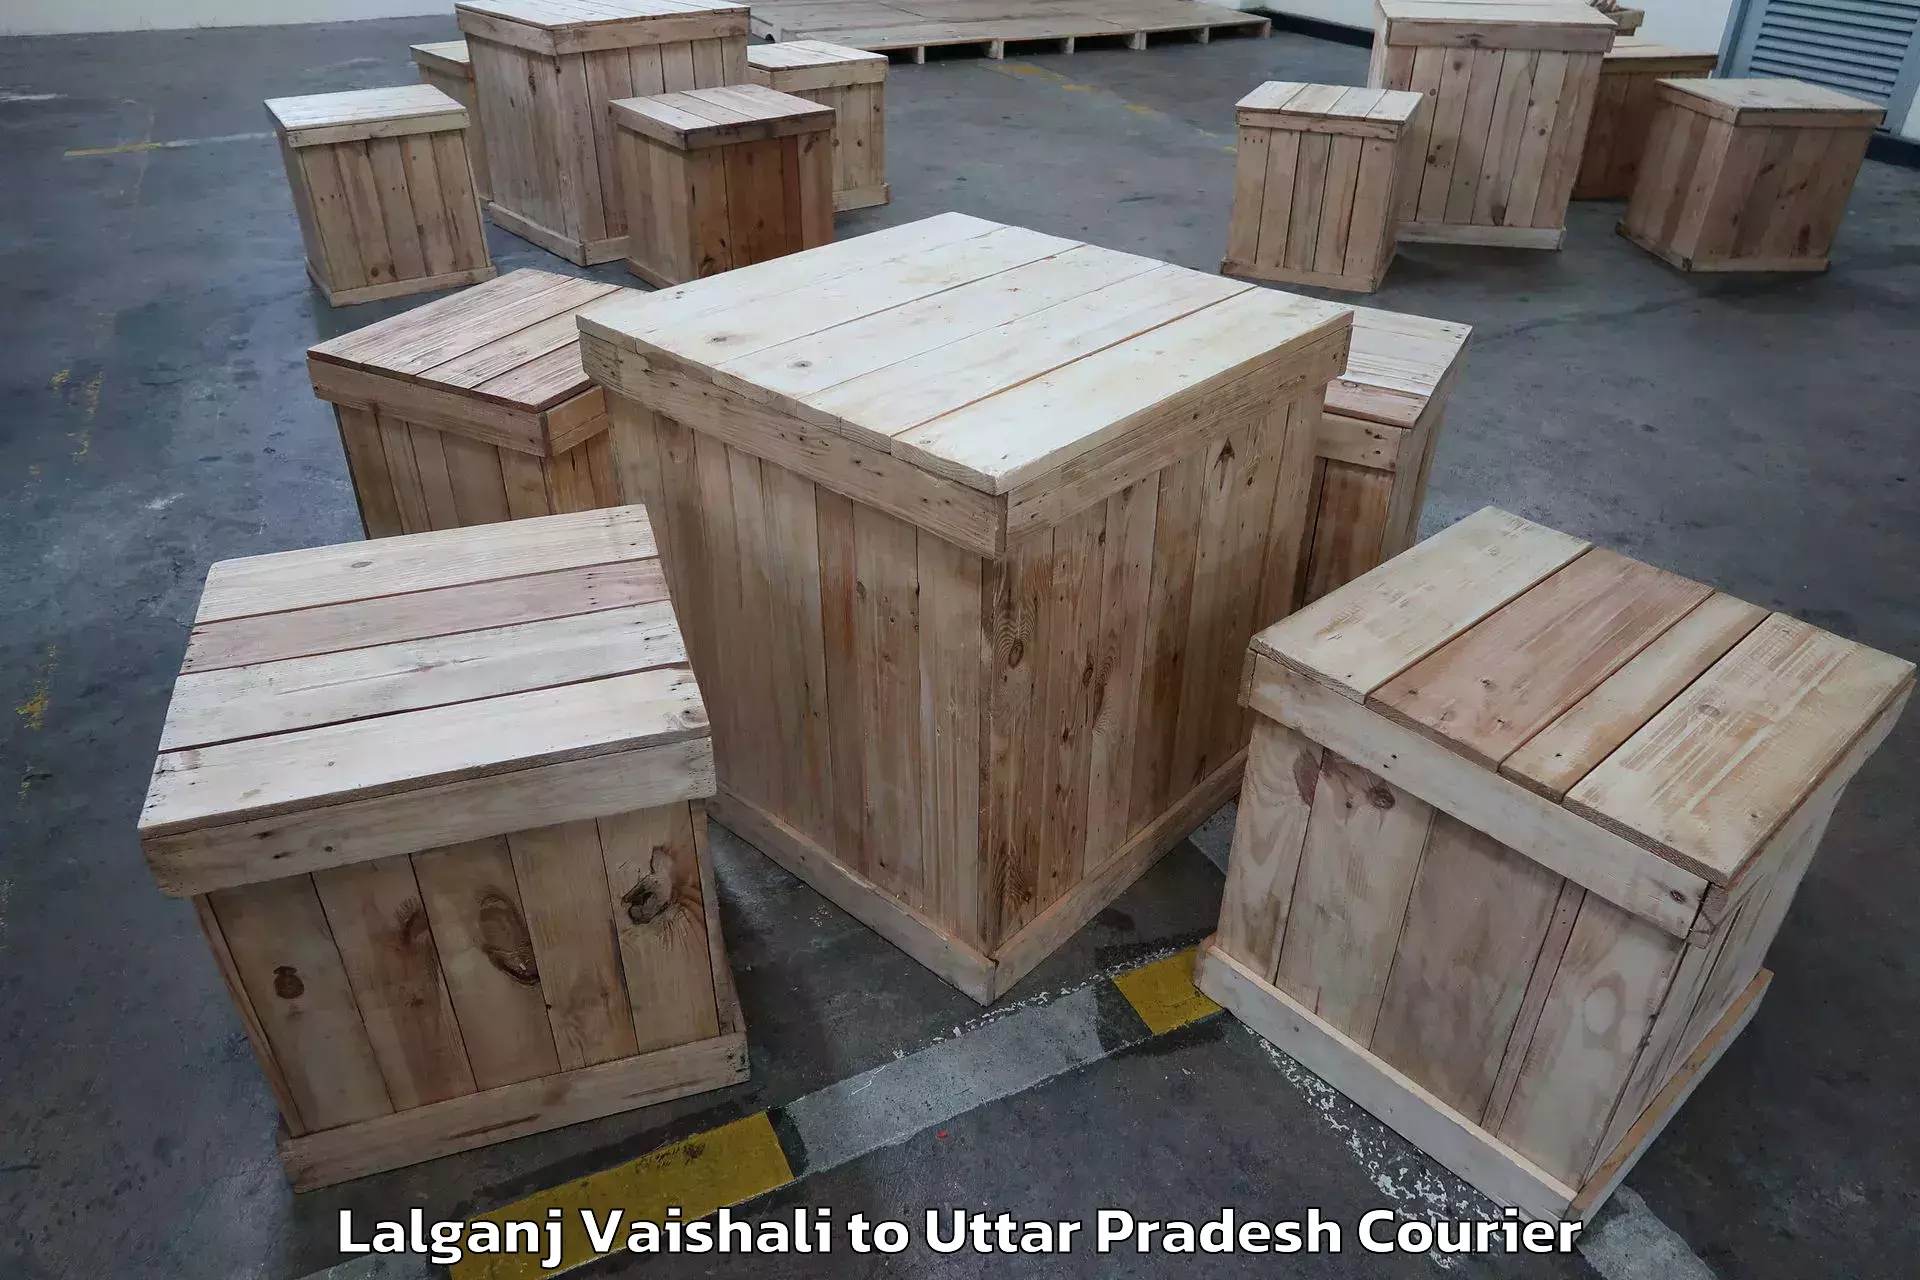 Specialized moving company Lalganj Vaishali to Phoolpur